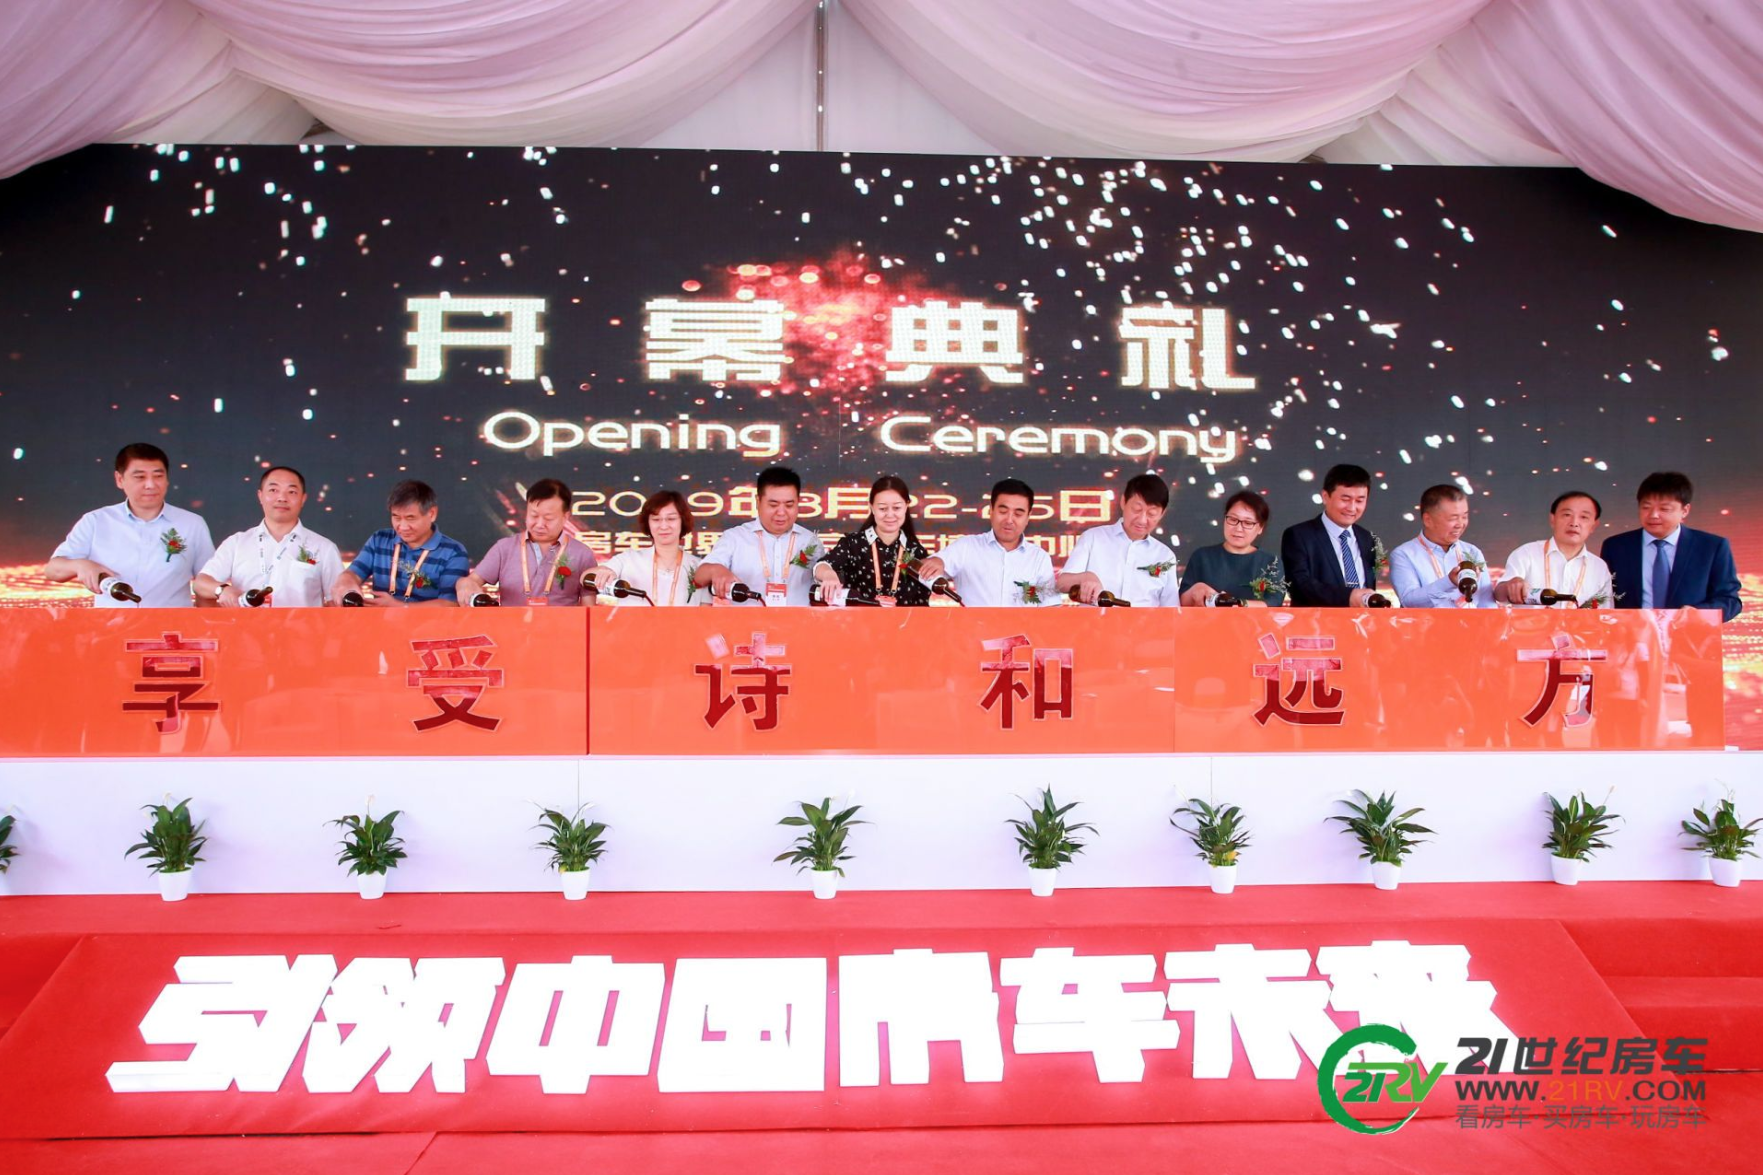 【展会】8月22-25日 第19届中国（北京）国际房车露营展览会盛大开幕